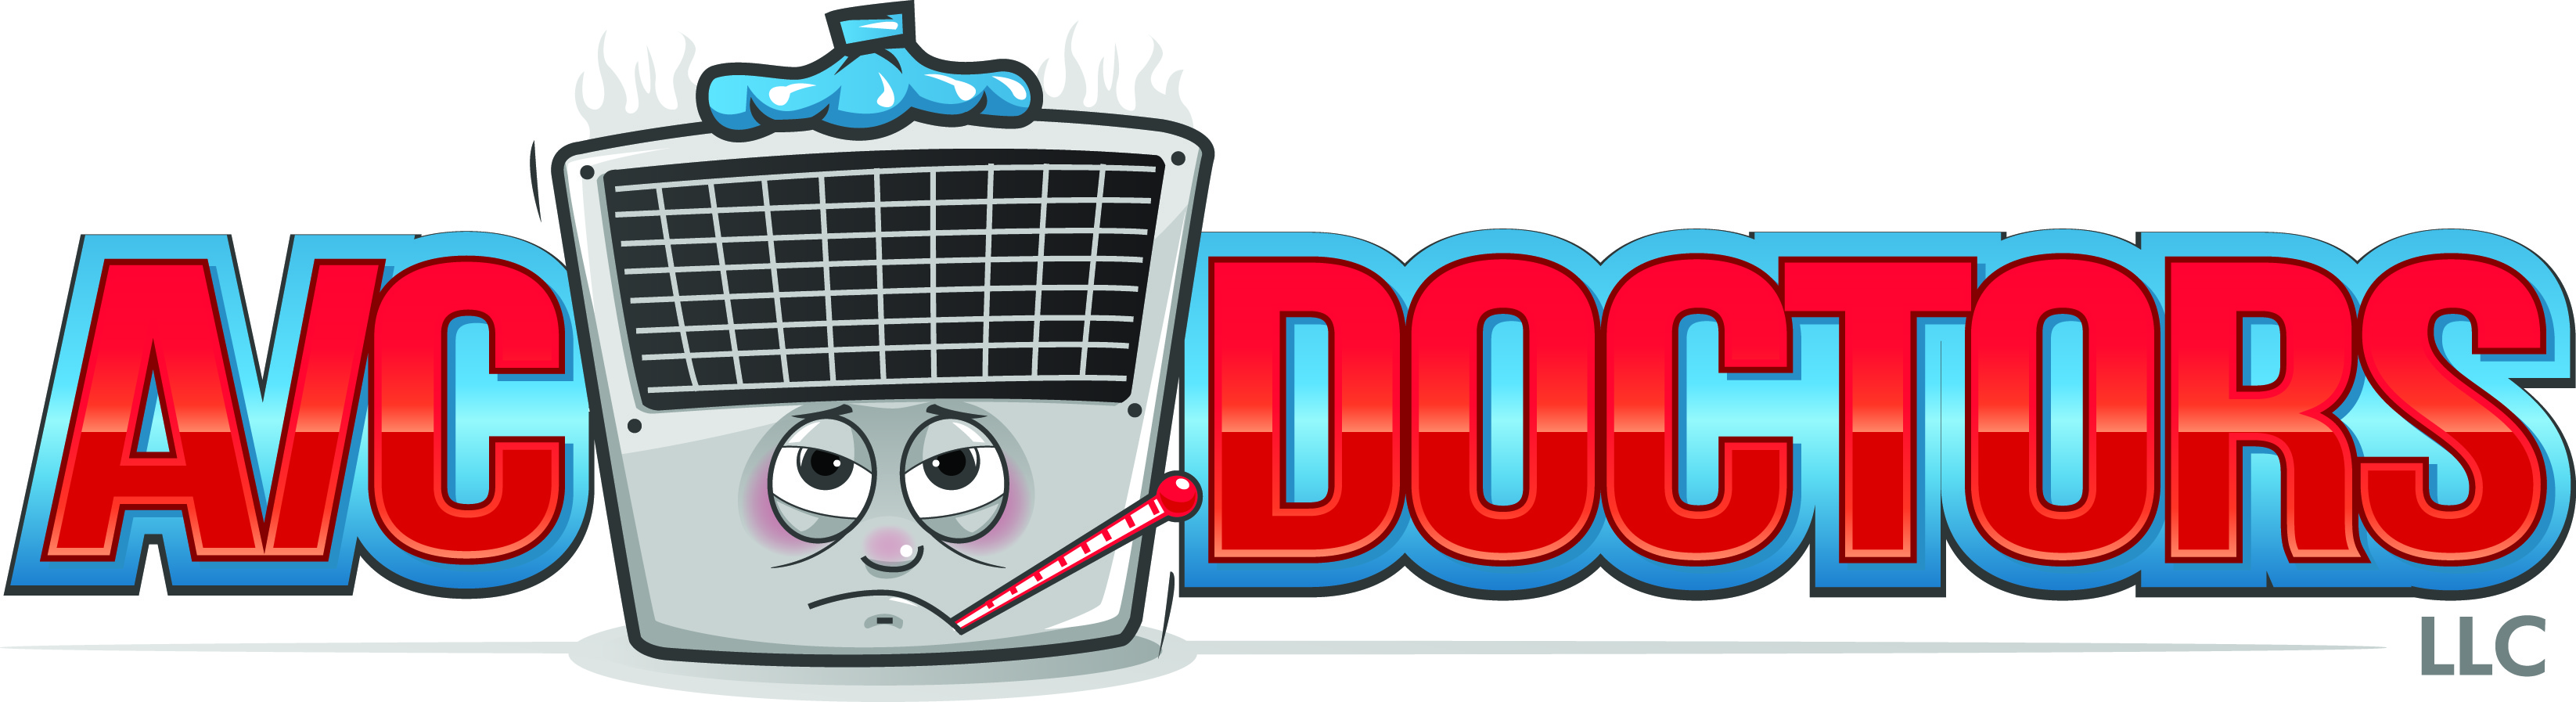 AC Doctors, LLC Logo